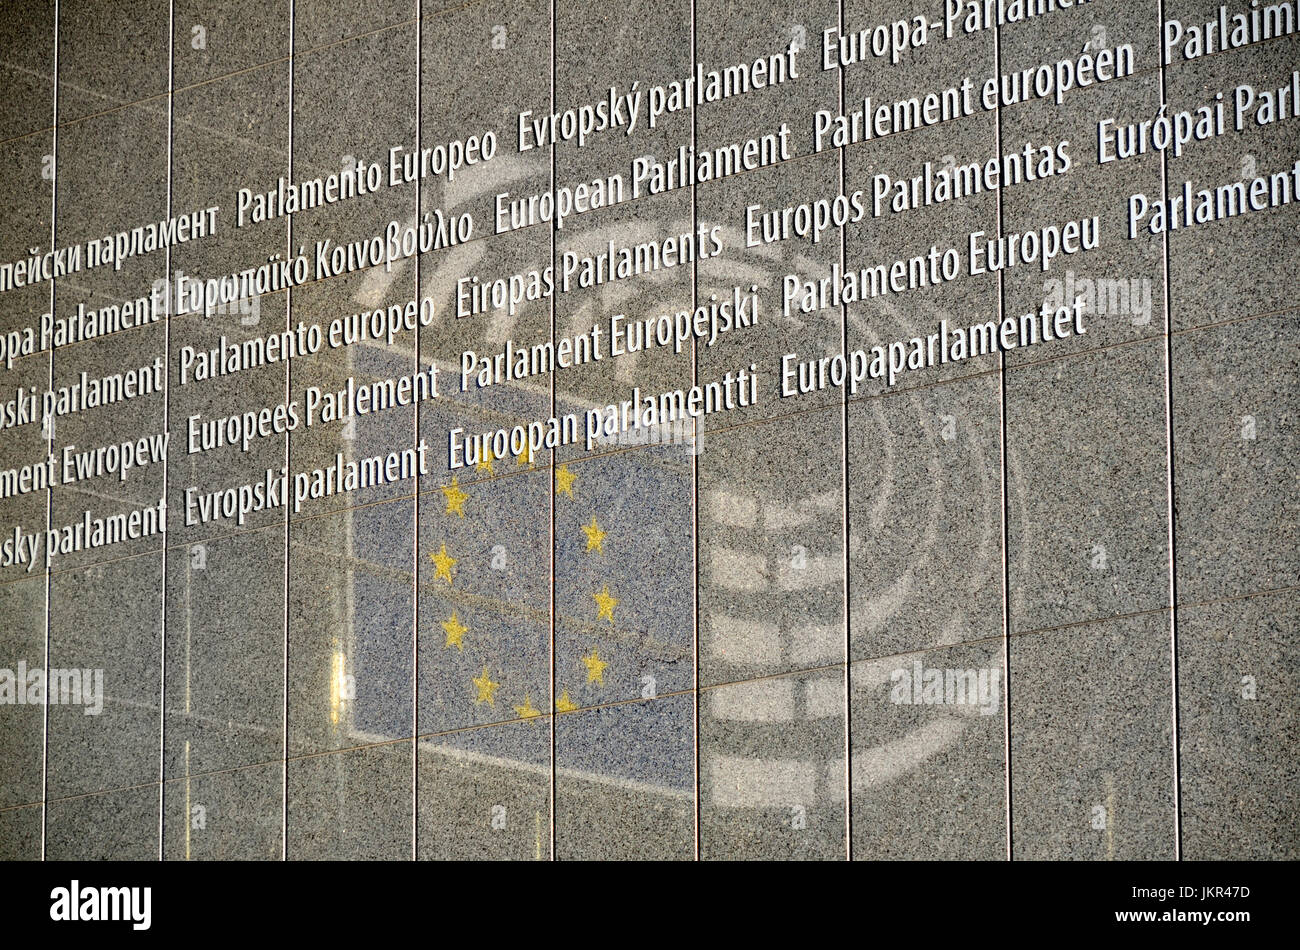 Brüssel, Belgien. Gebäude des Europäischen Parlaments. Alle Sprachen der EU und der Reflexion des Parlaments Symbols am Haupteingang Stockfoto